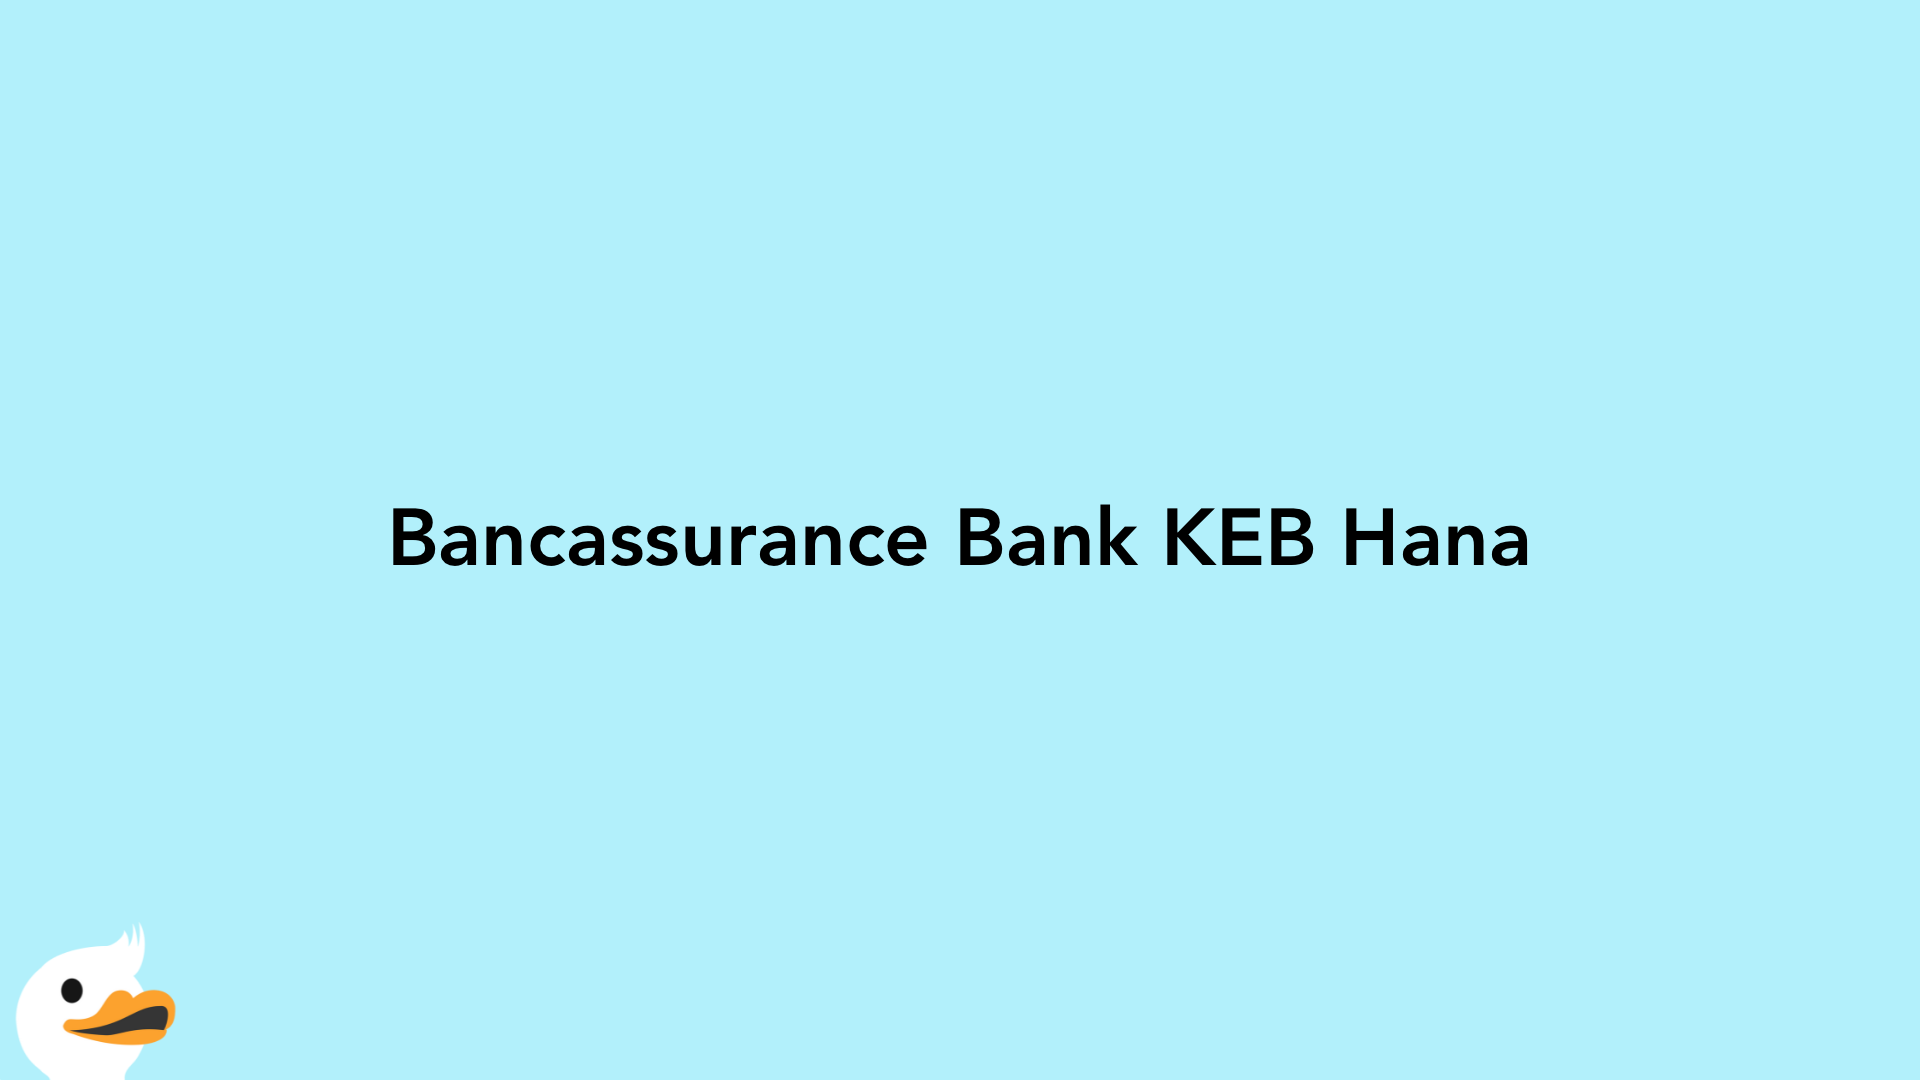 Bancassurance Bank KEB Hana